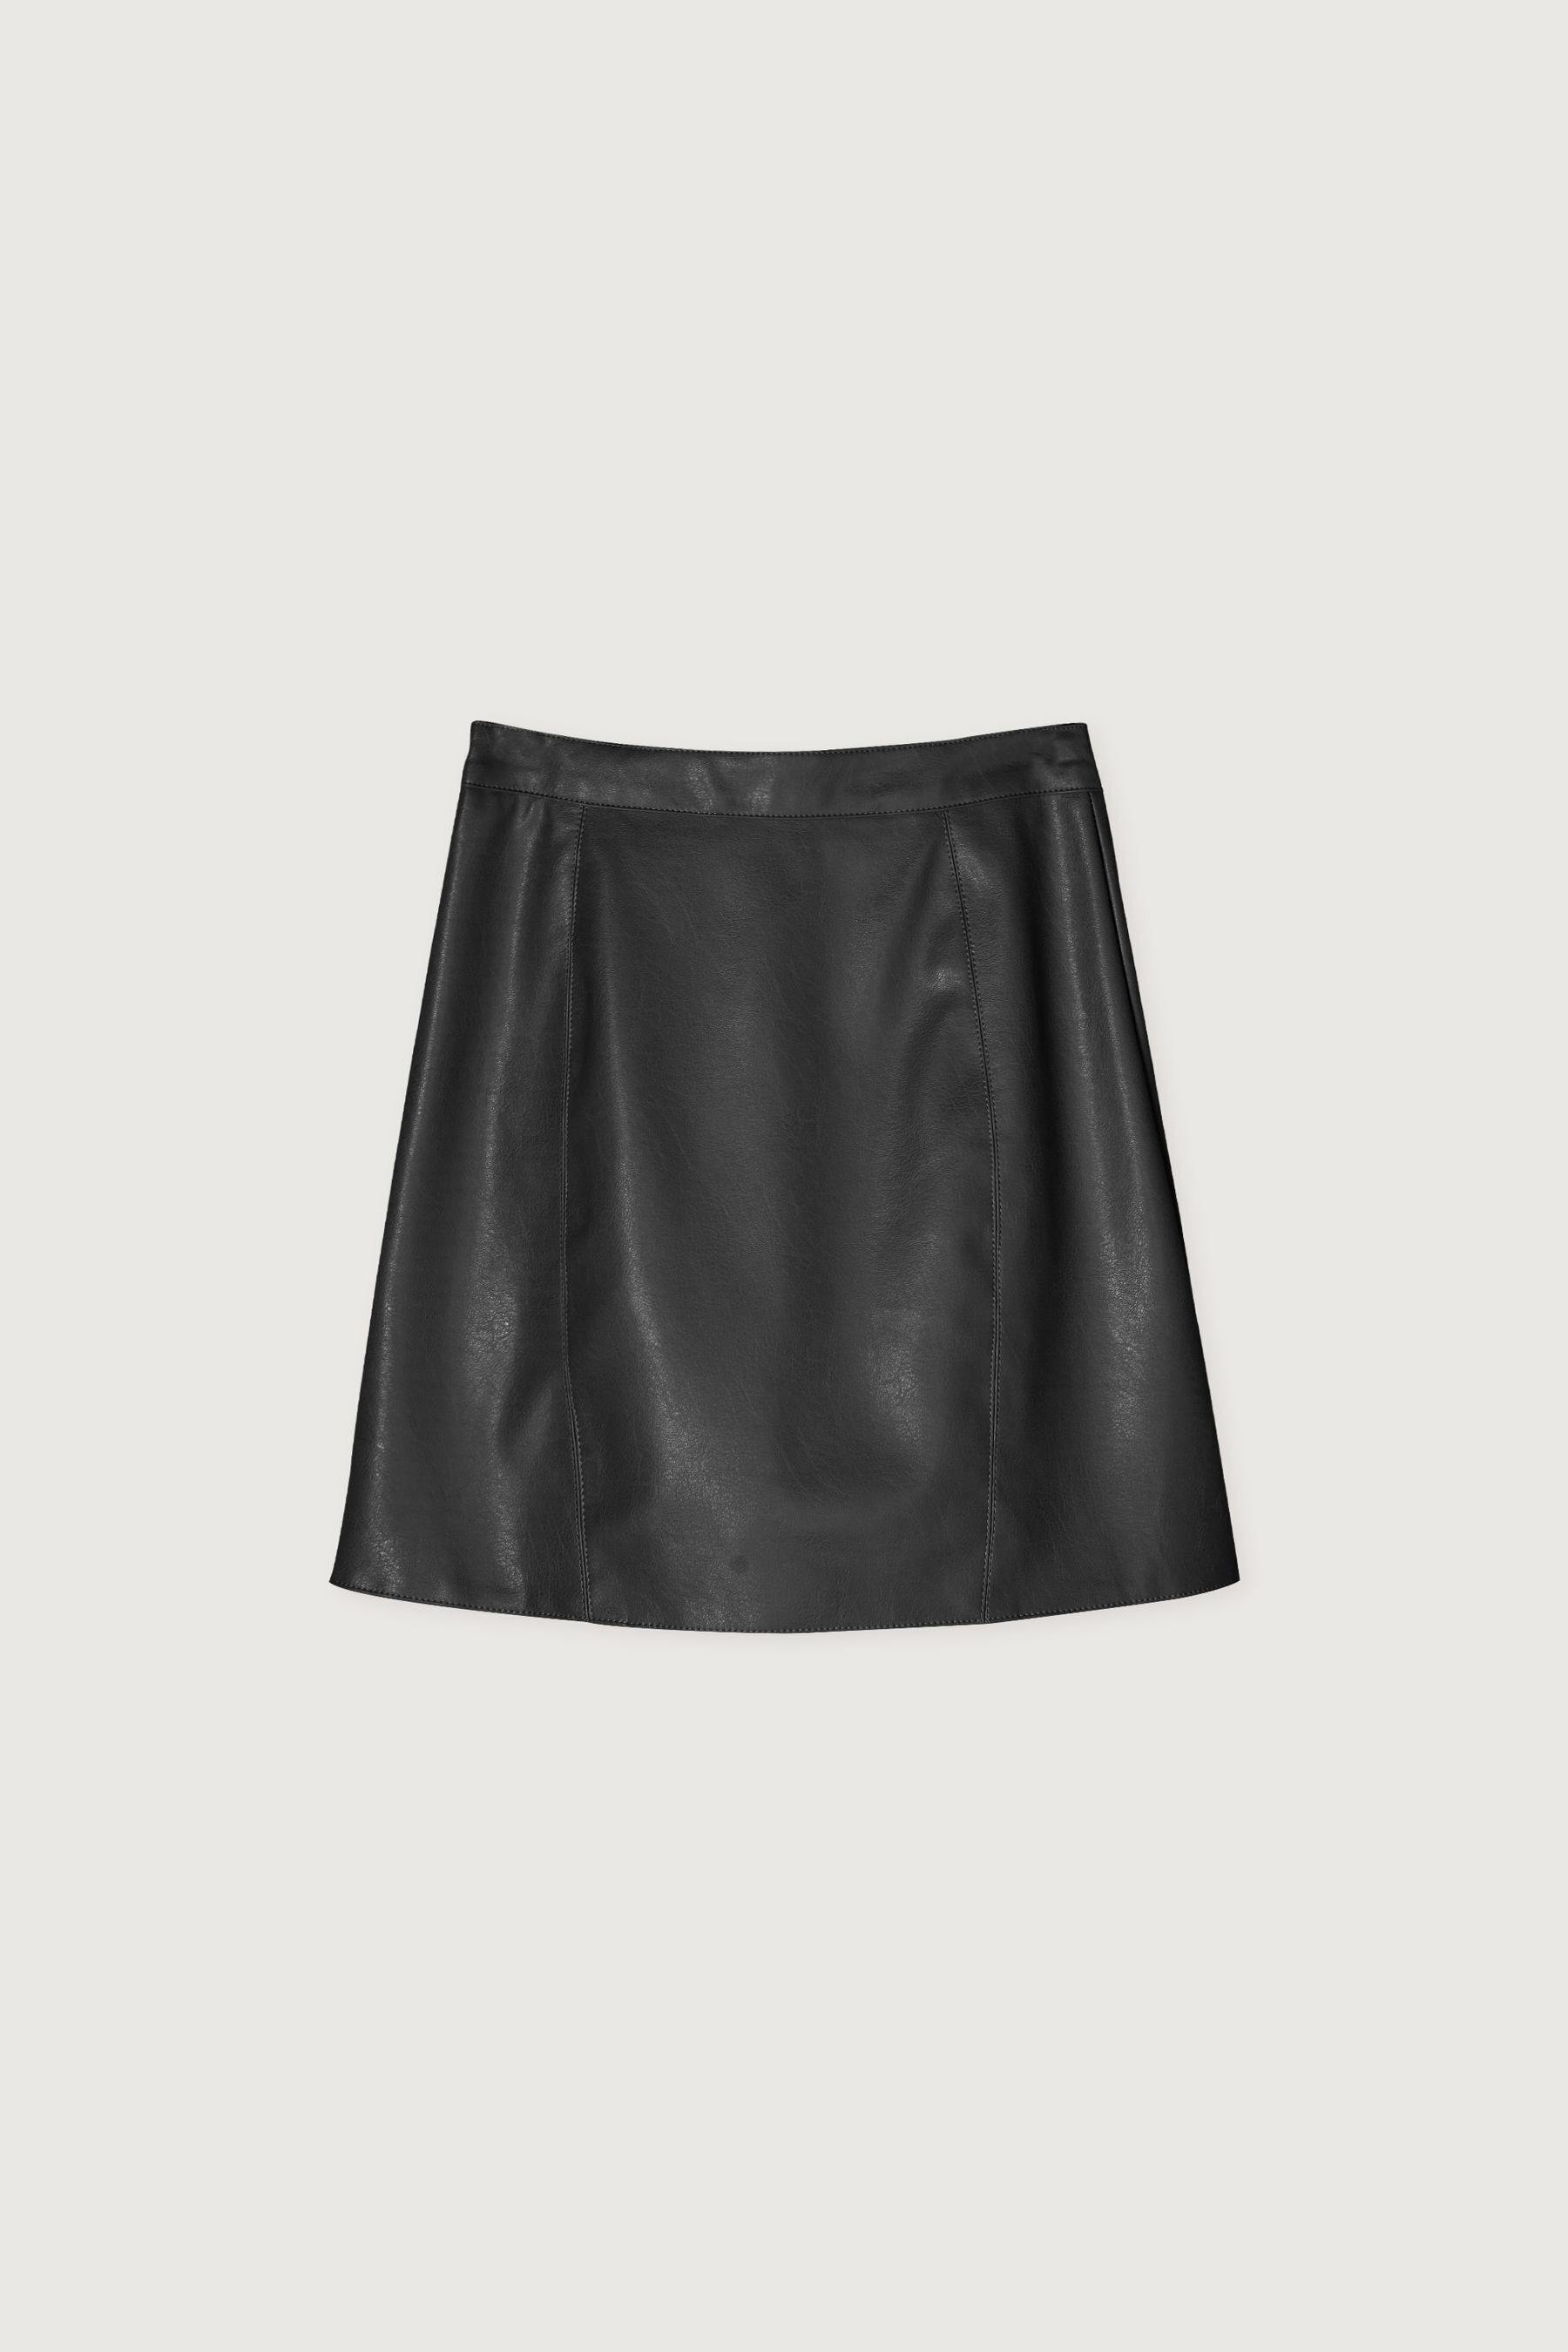 Skirt 4686 | OAK + FORT